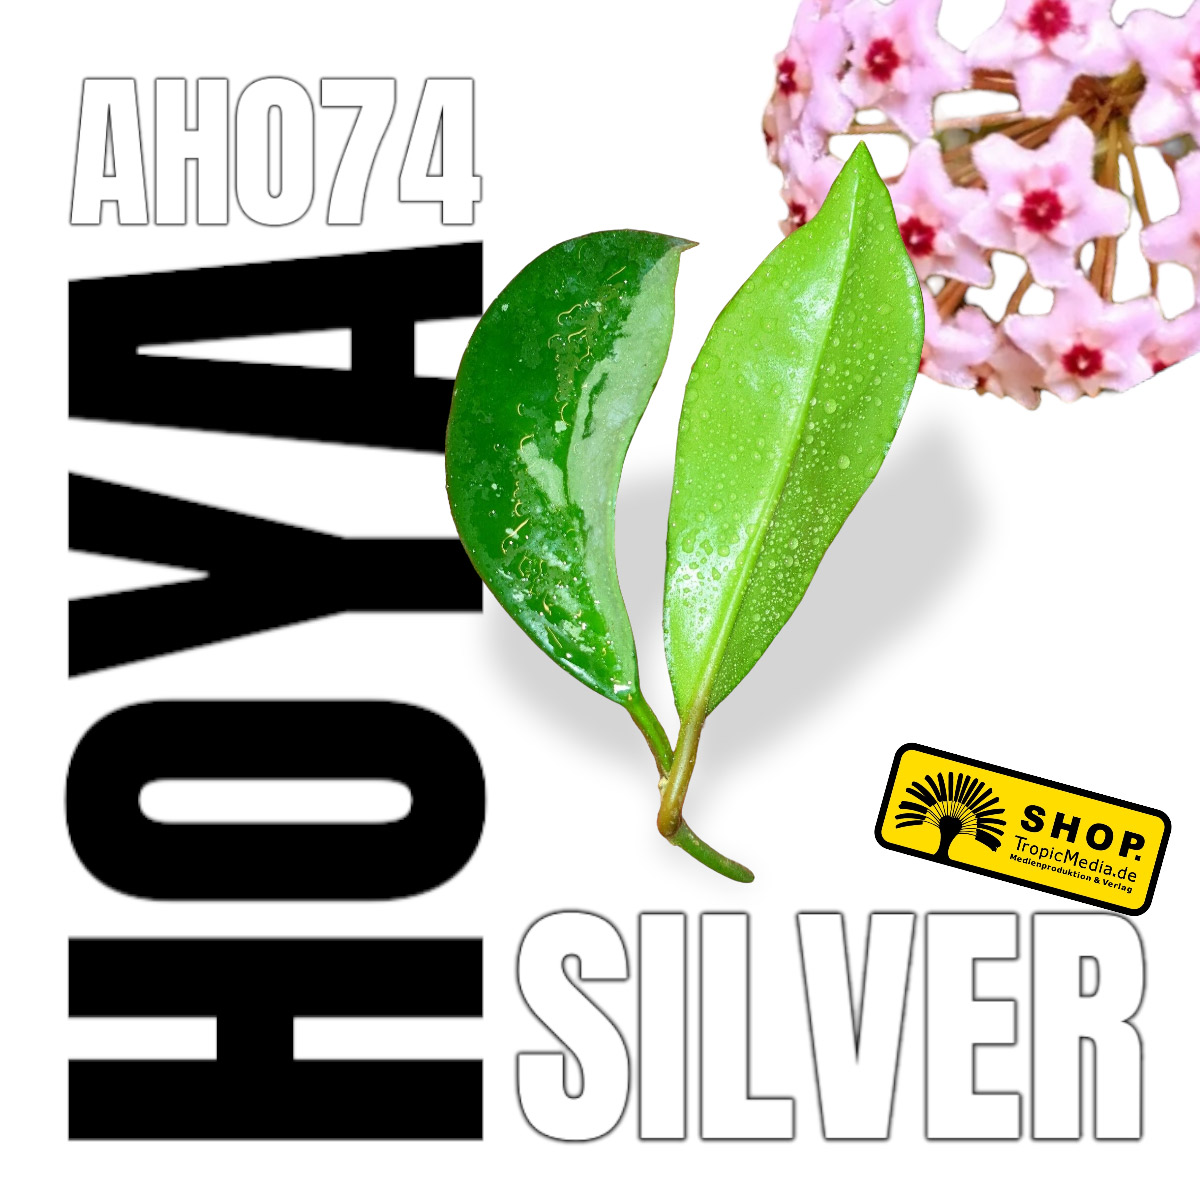 Hoya cv. AH074 Silver